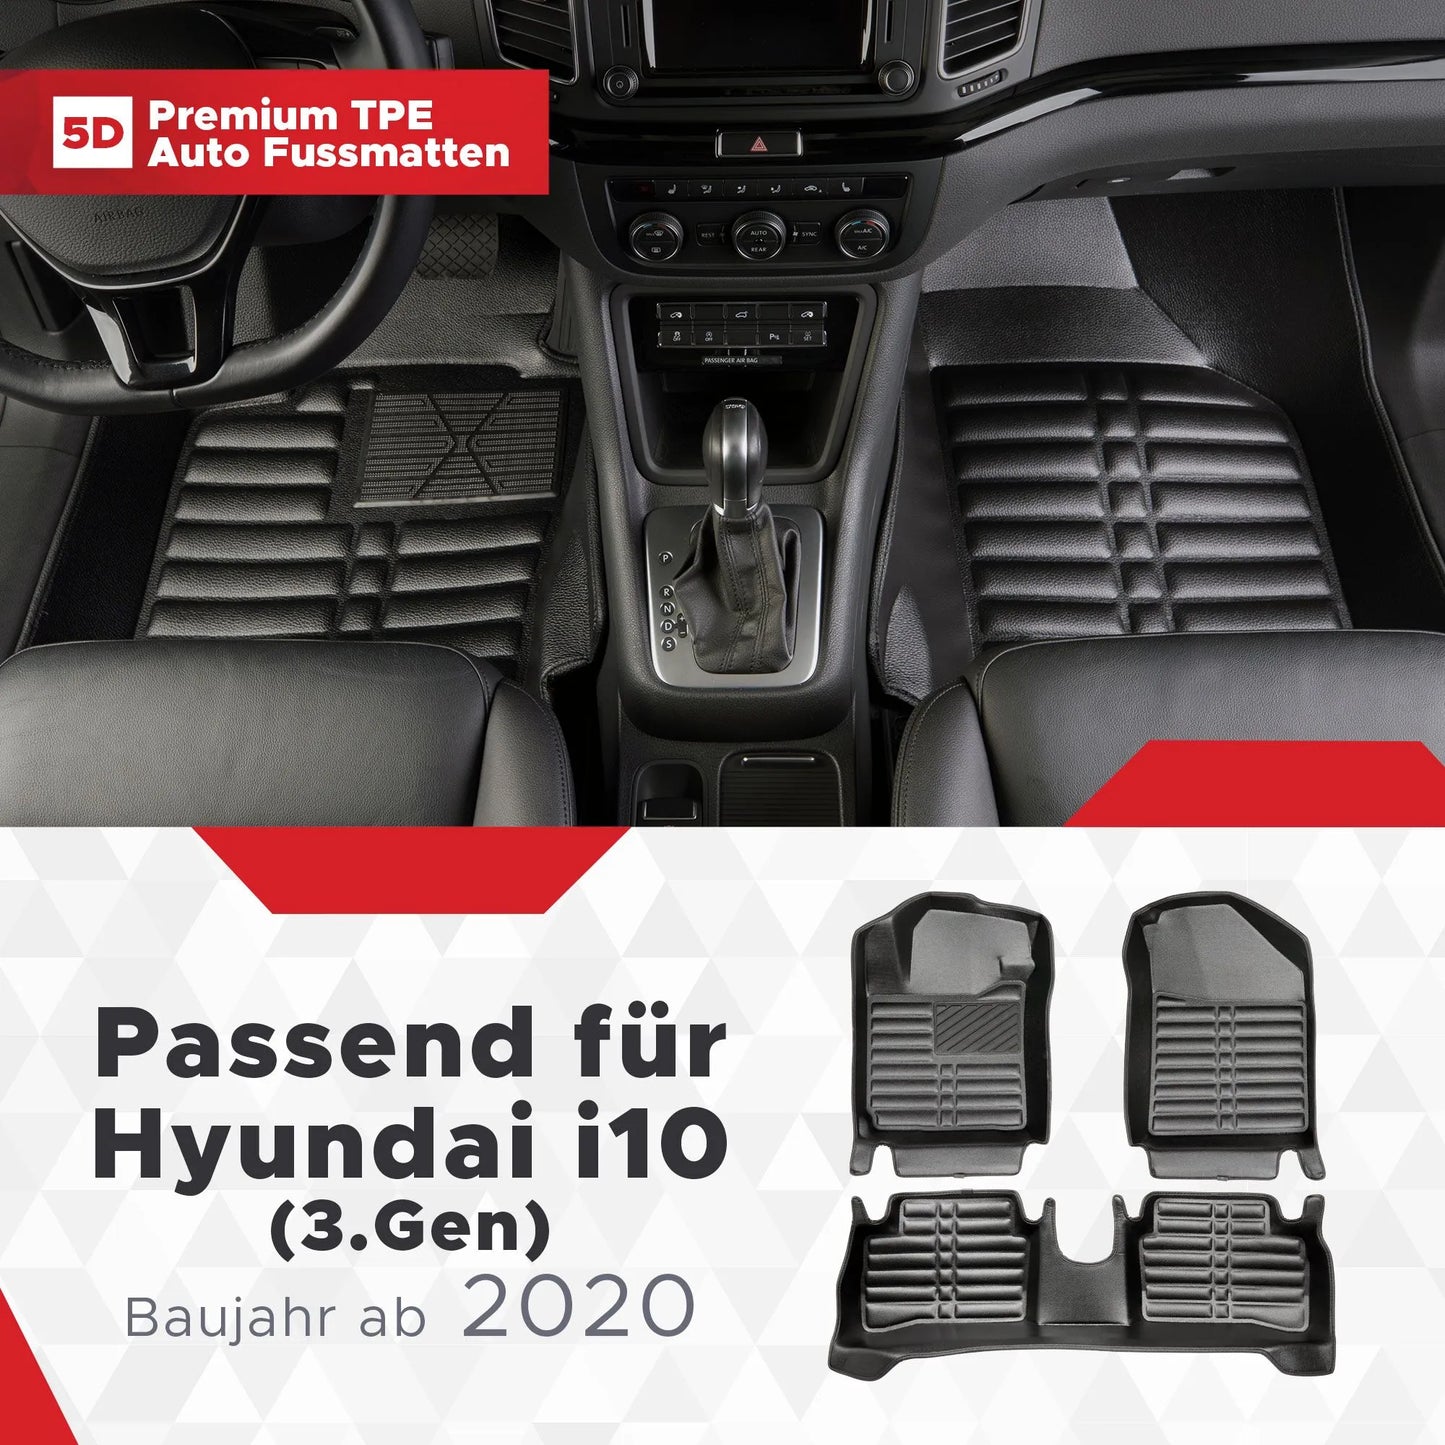 5D Starline Premium Auto Fussmatten TPE Set passend für Hyundai i10 (3.Gen) Baujahr ab 2020